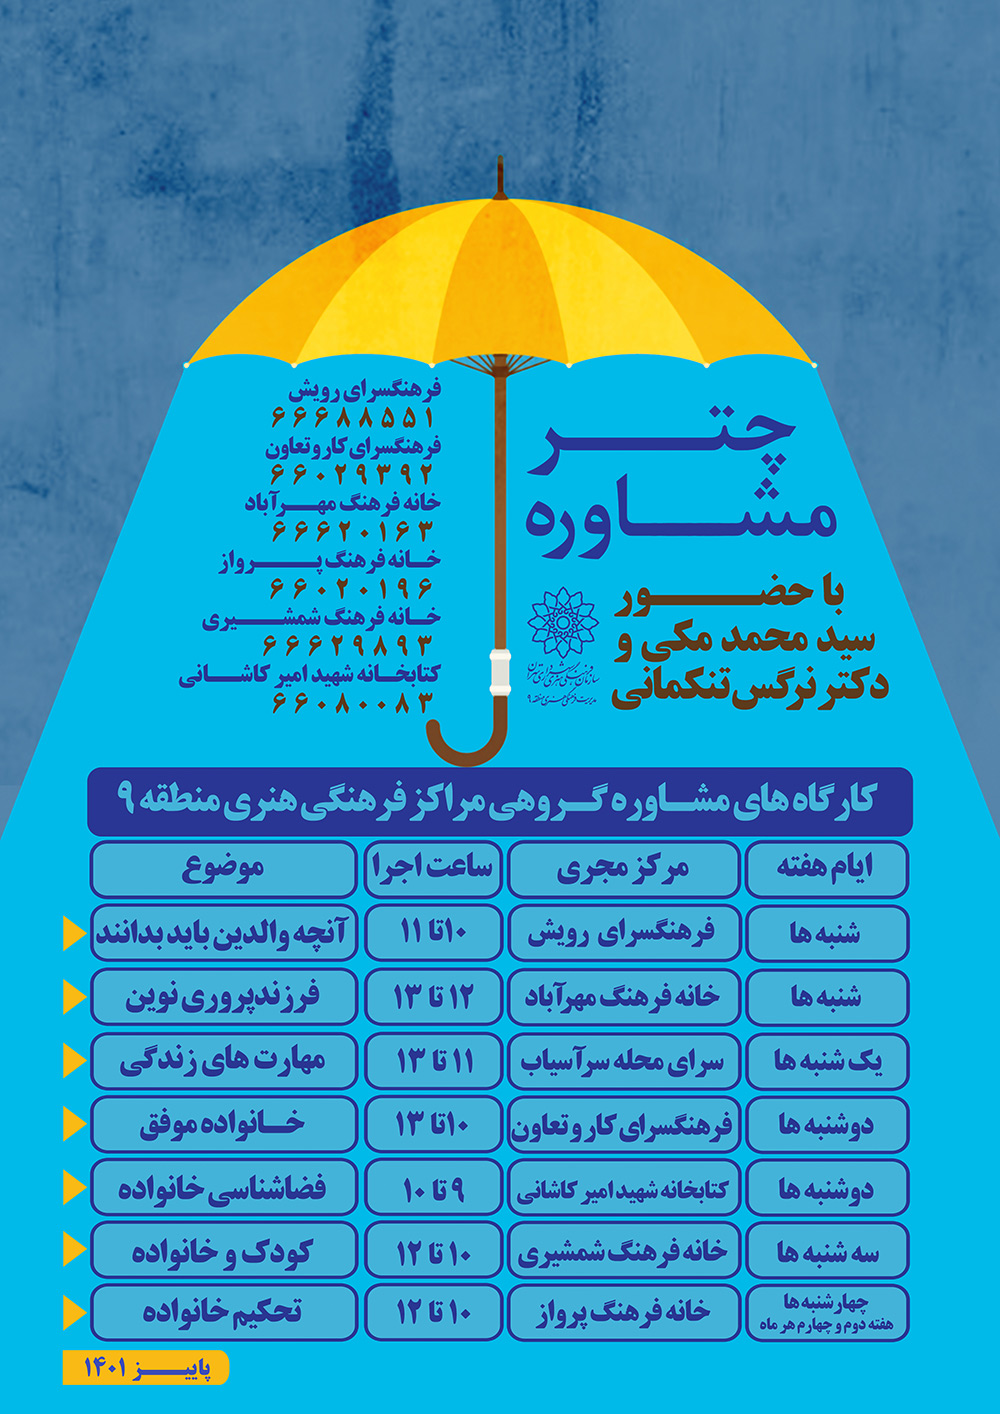 چتر مشاوره بصورت رایگان در اختیار خانواده های منطقه 9